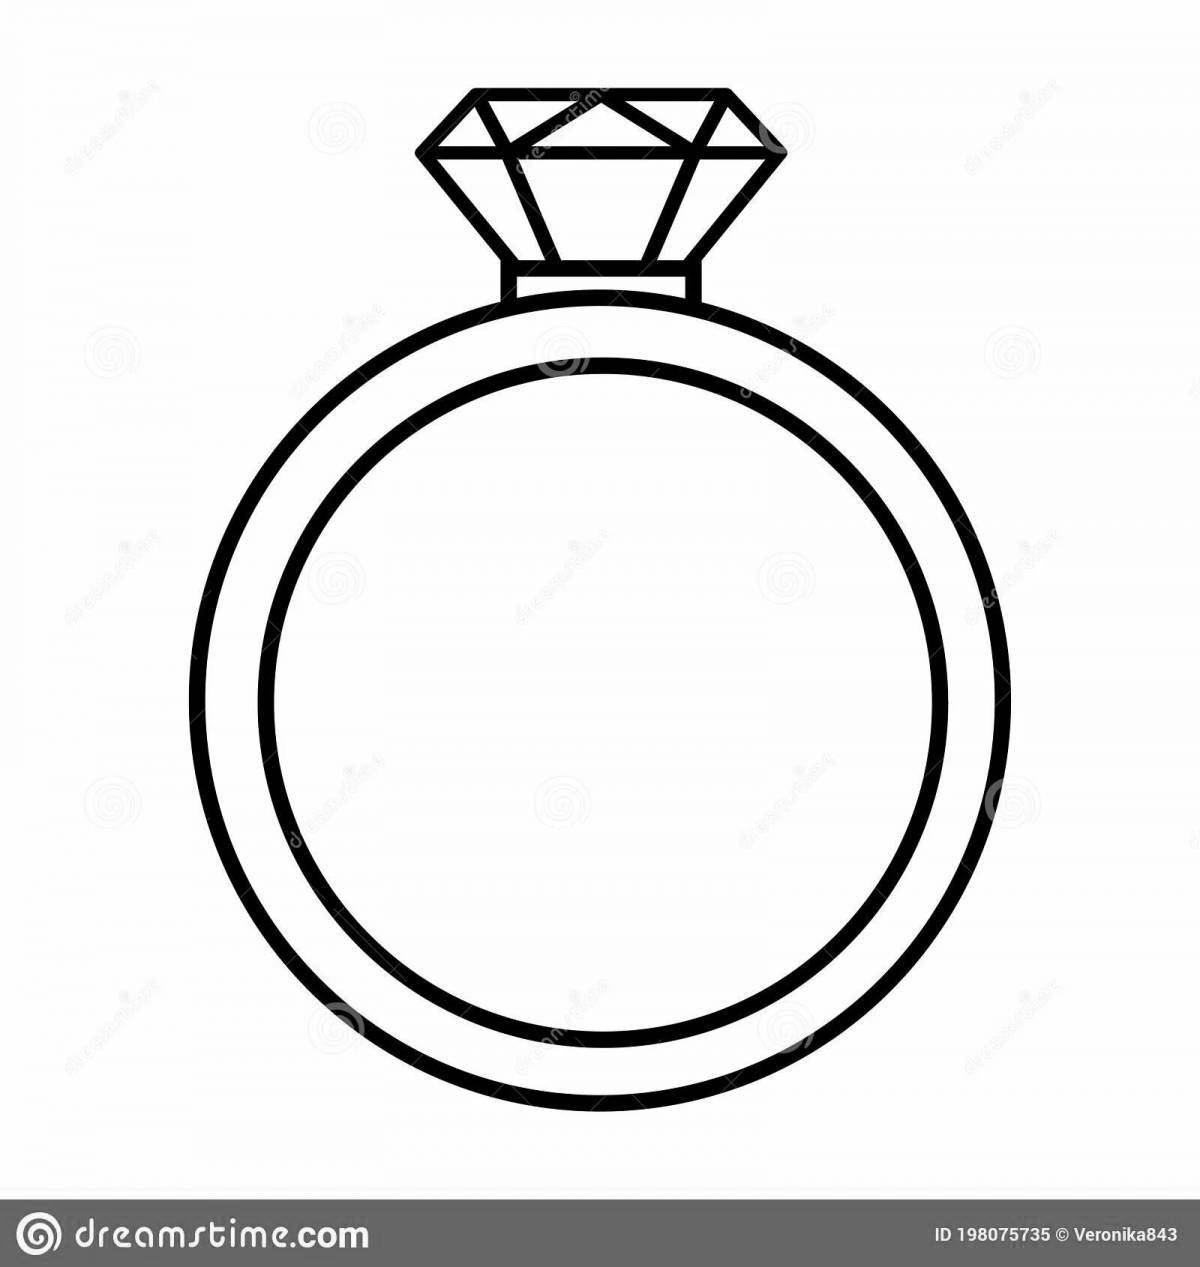 Glamorous diamond ring coloring